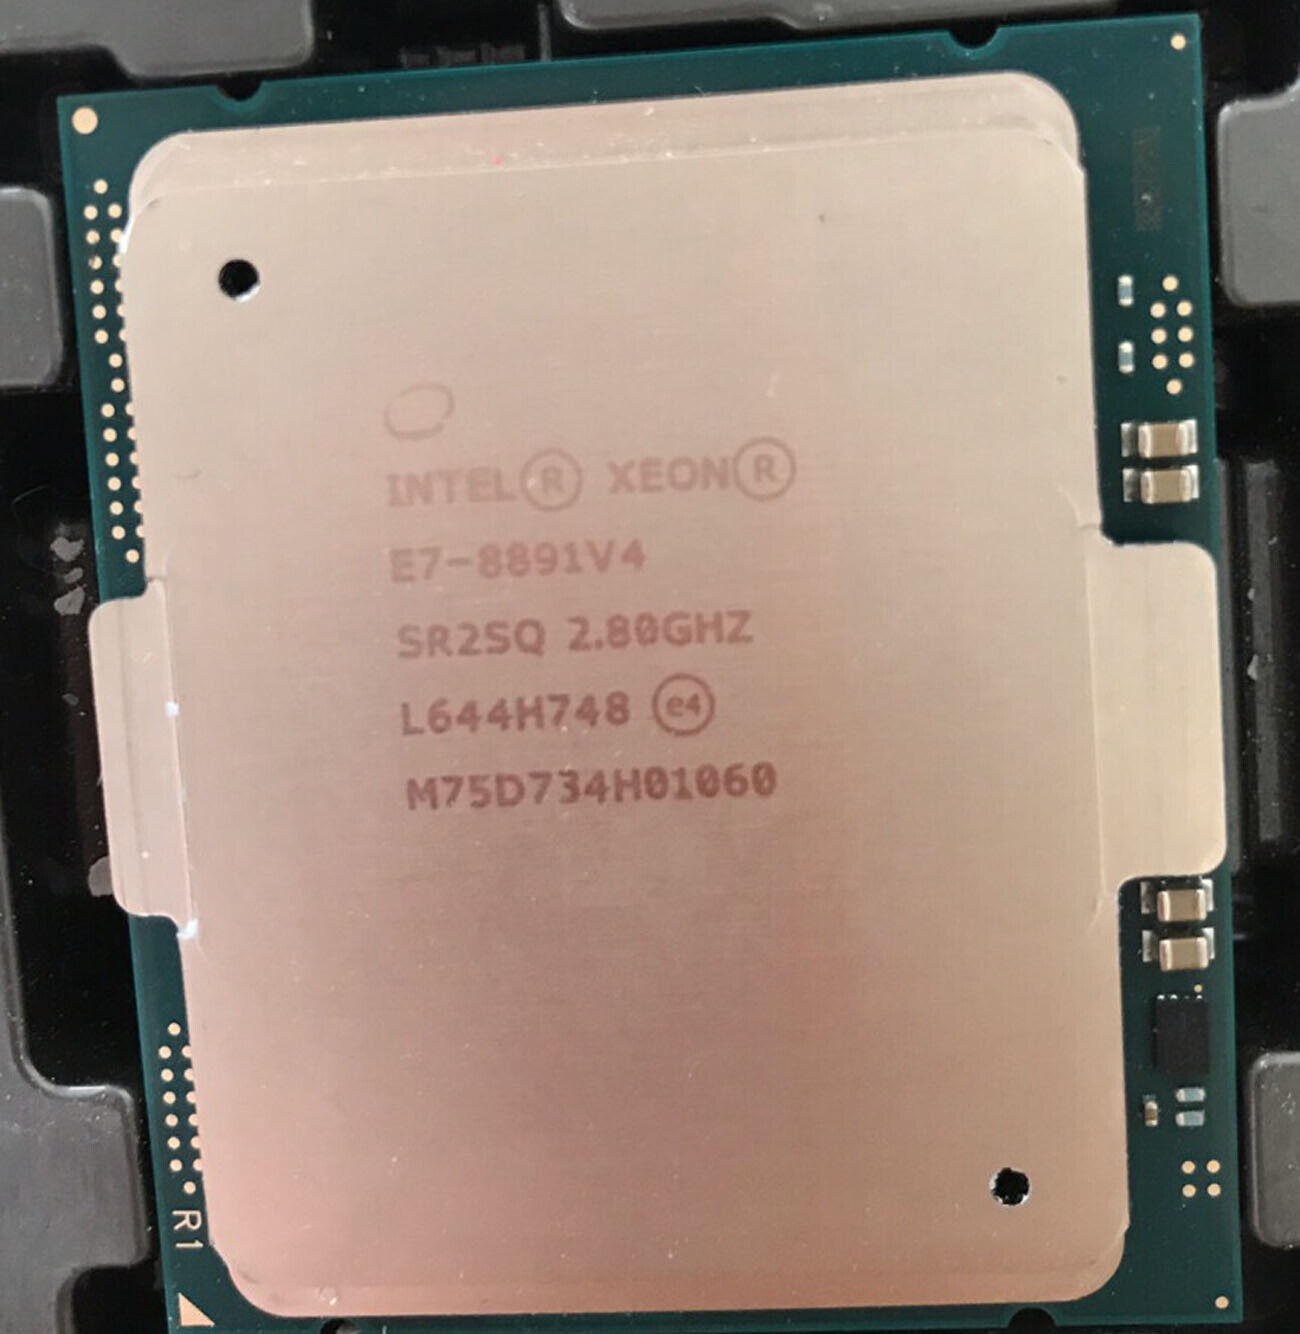 Intel Xeon E7-8891 V4 2.80GHz 10-core 20-thread 140W 60MB CPU processor